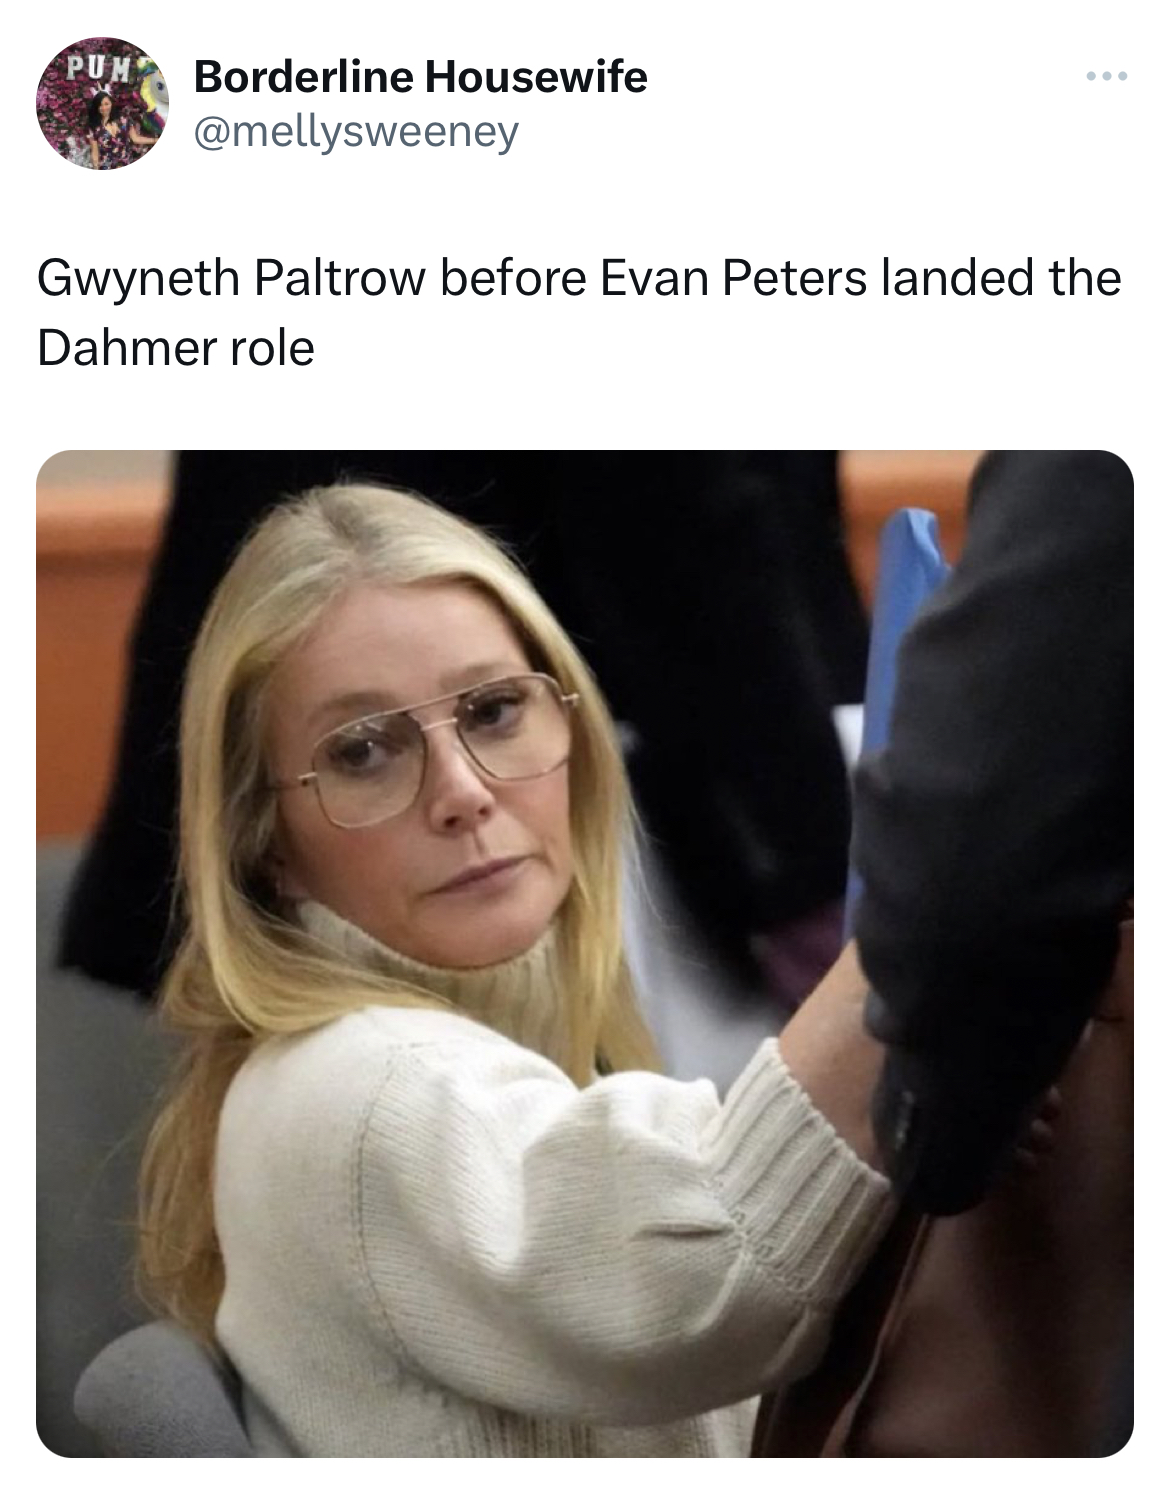 Gwyneth Paltrow Jeffrey Dahmer memes - Gwyneth Paltrow - Borderline Housewife Gwyneth Paltrow before Evan Peters landed the Dahmer role